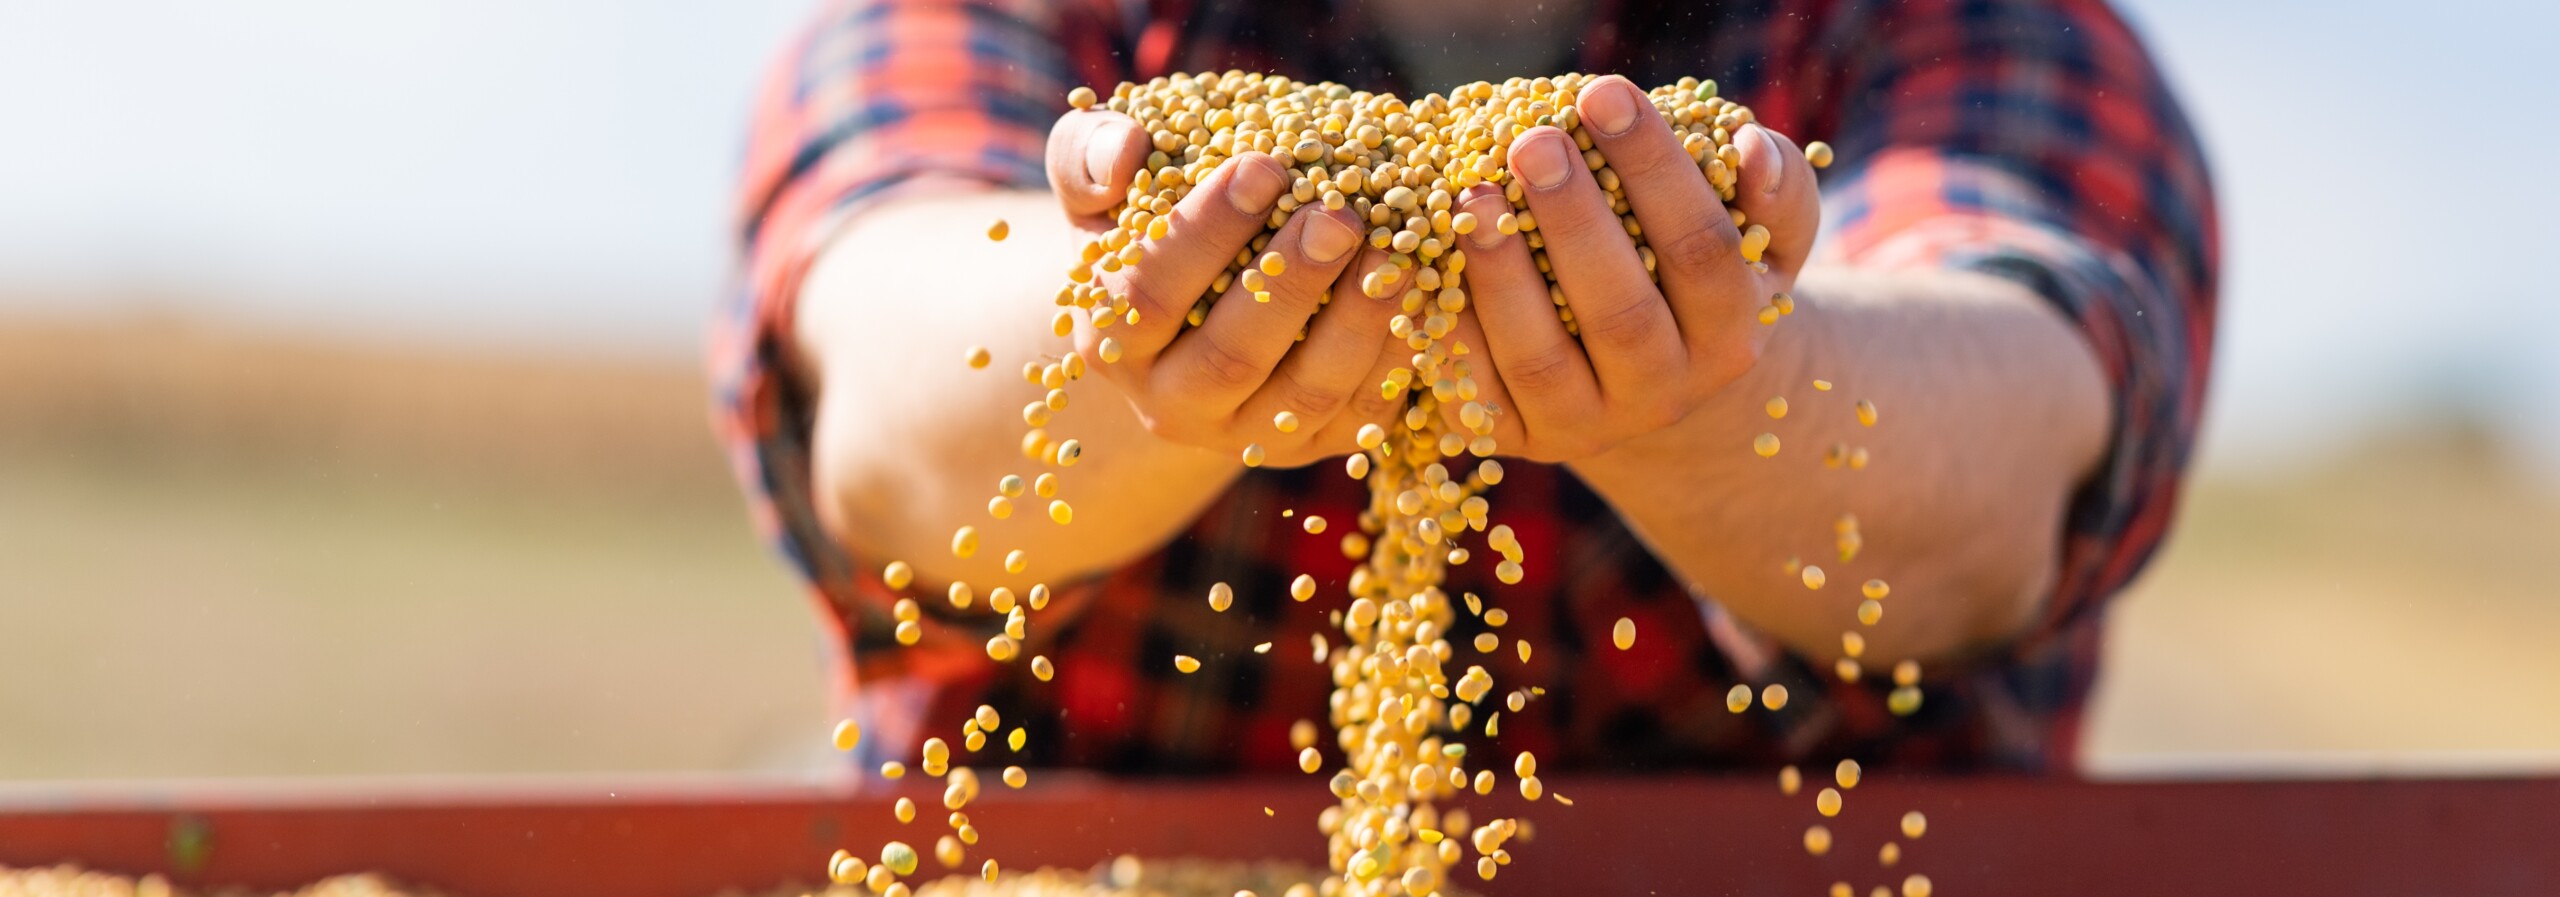 Agricultor manuseia grãos de soja; Fonte: Shutterstock